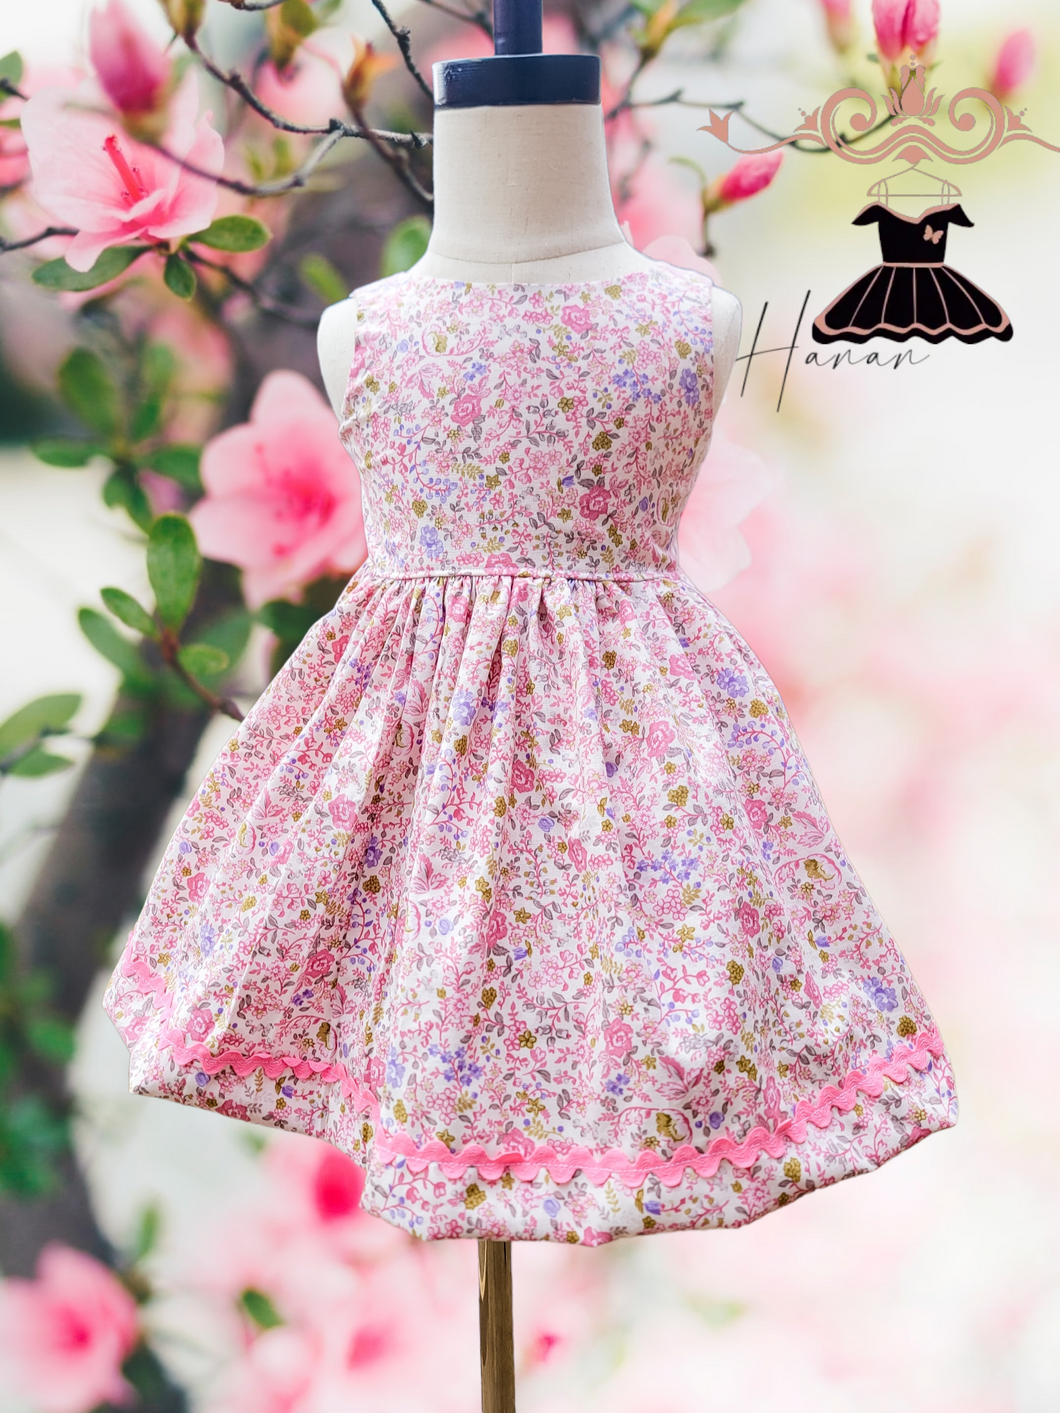 Pink floral dress